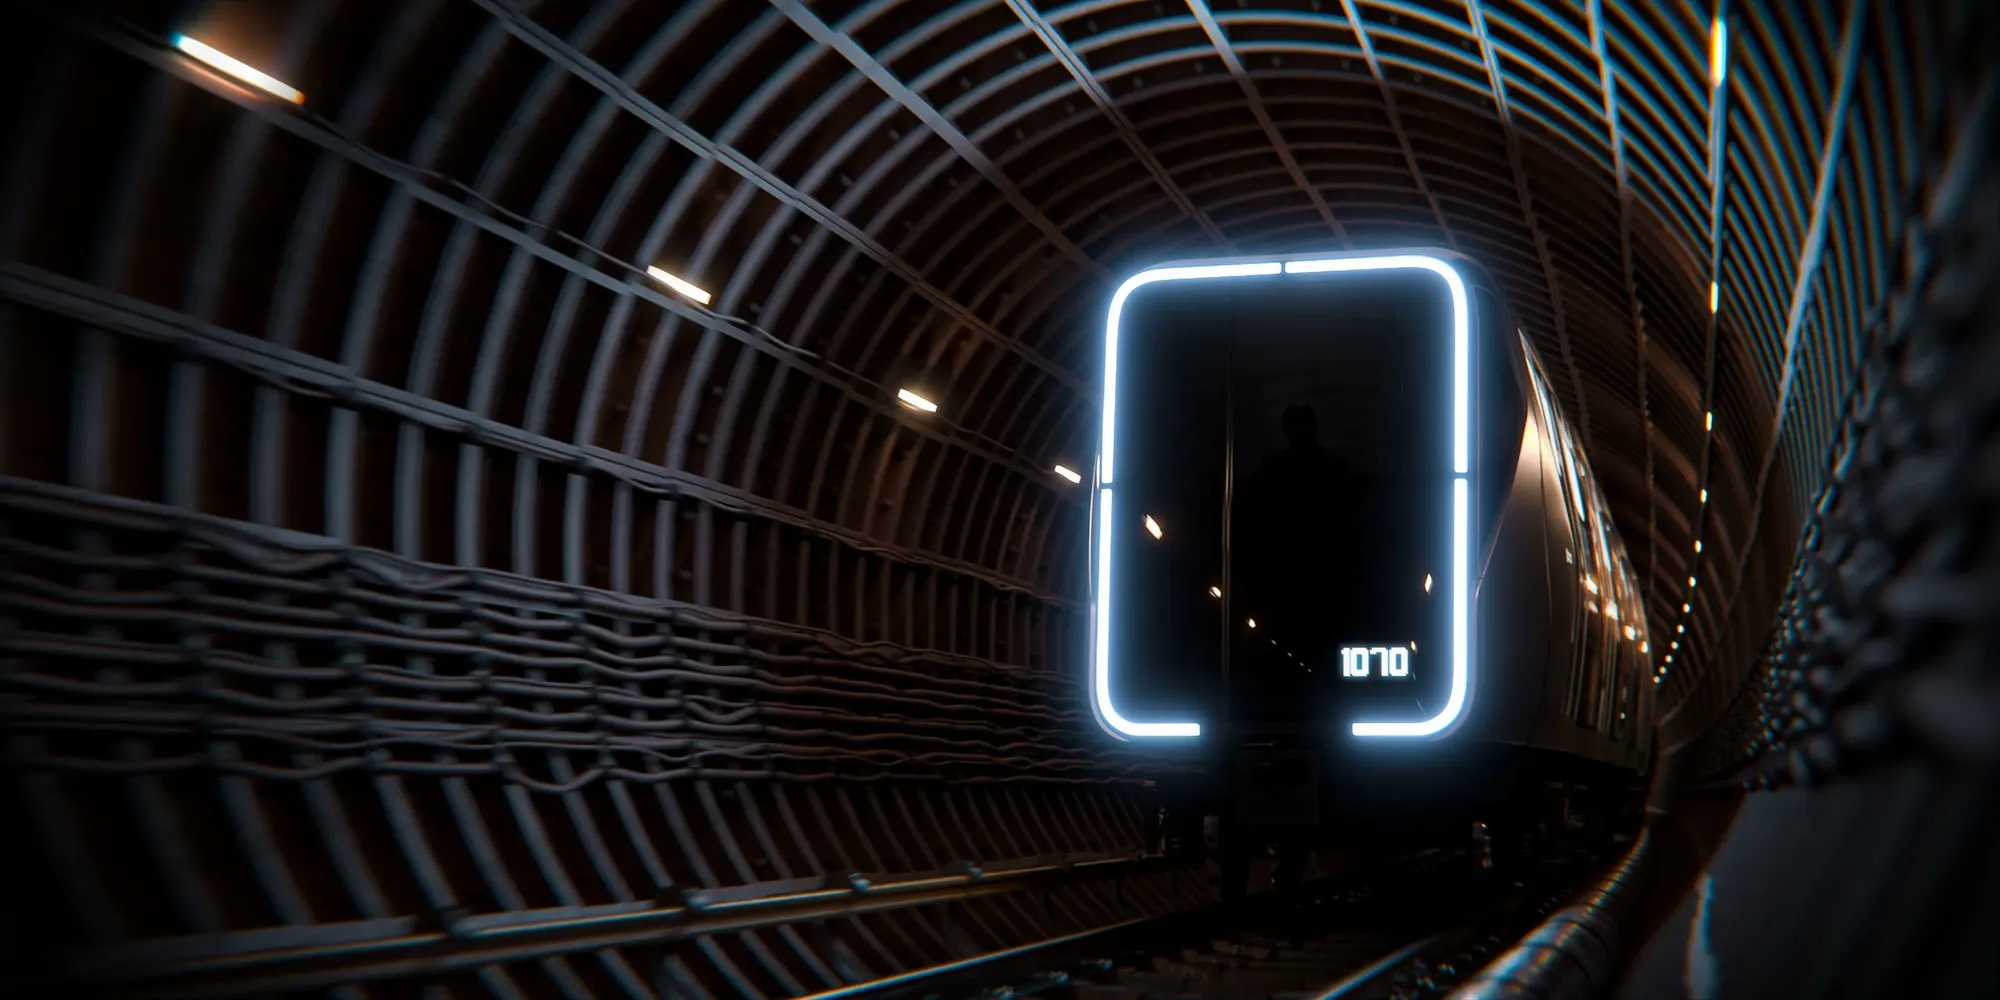 метро москвы в будущем